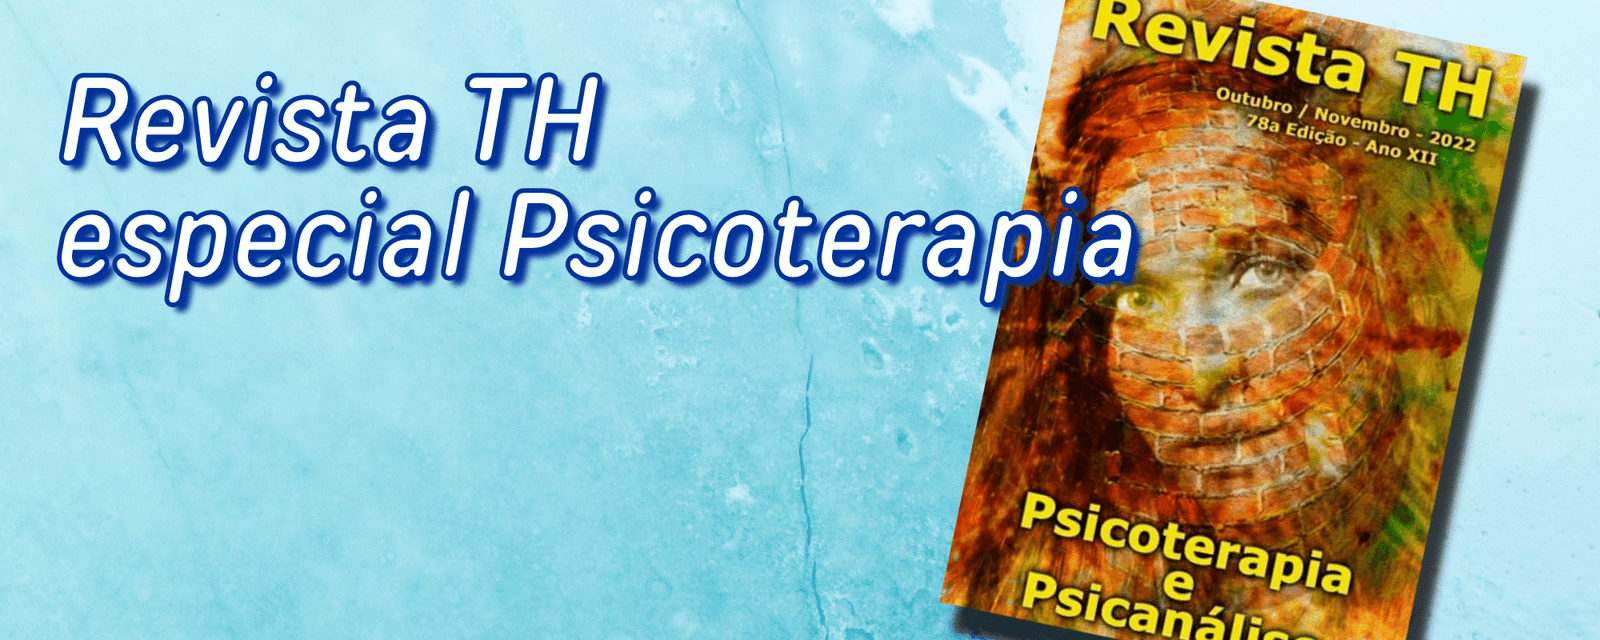 Revista TH especialmente dedicada à Psicoterapia.